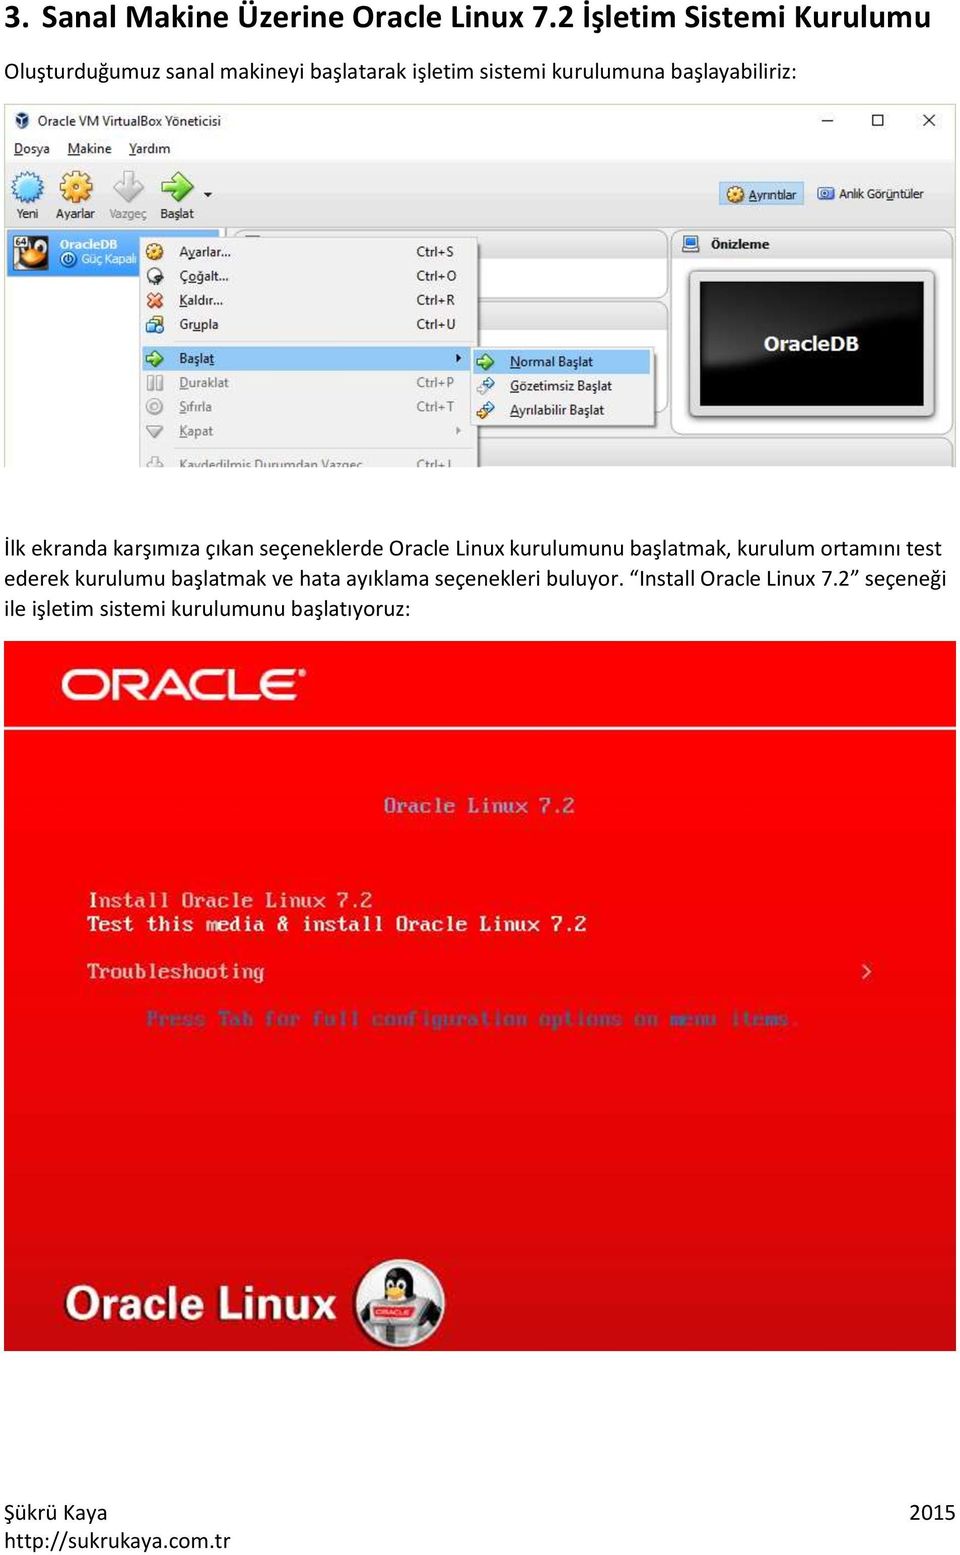 başlayabiliriz: İlk ekranda karşımıza çıkan seçeneklerde Oracle Linux kurulumunu başlatmak,